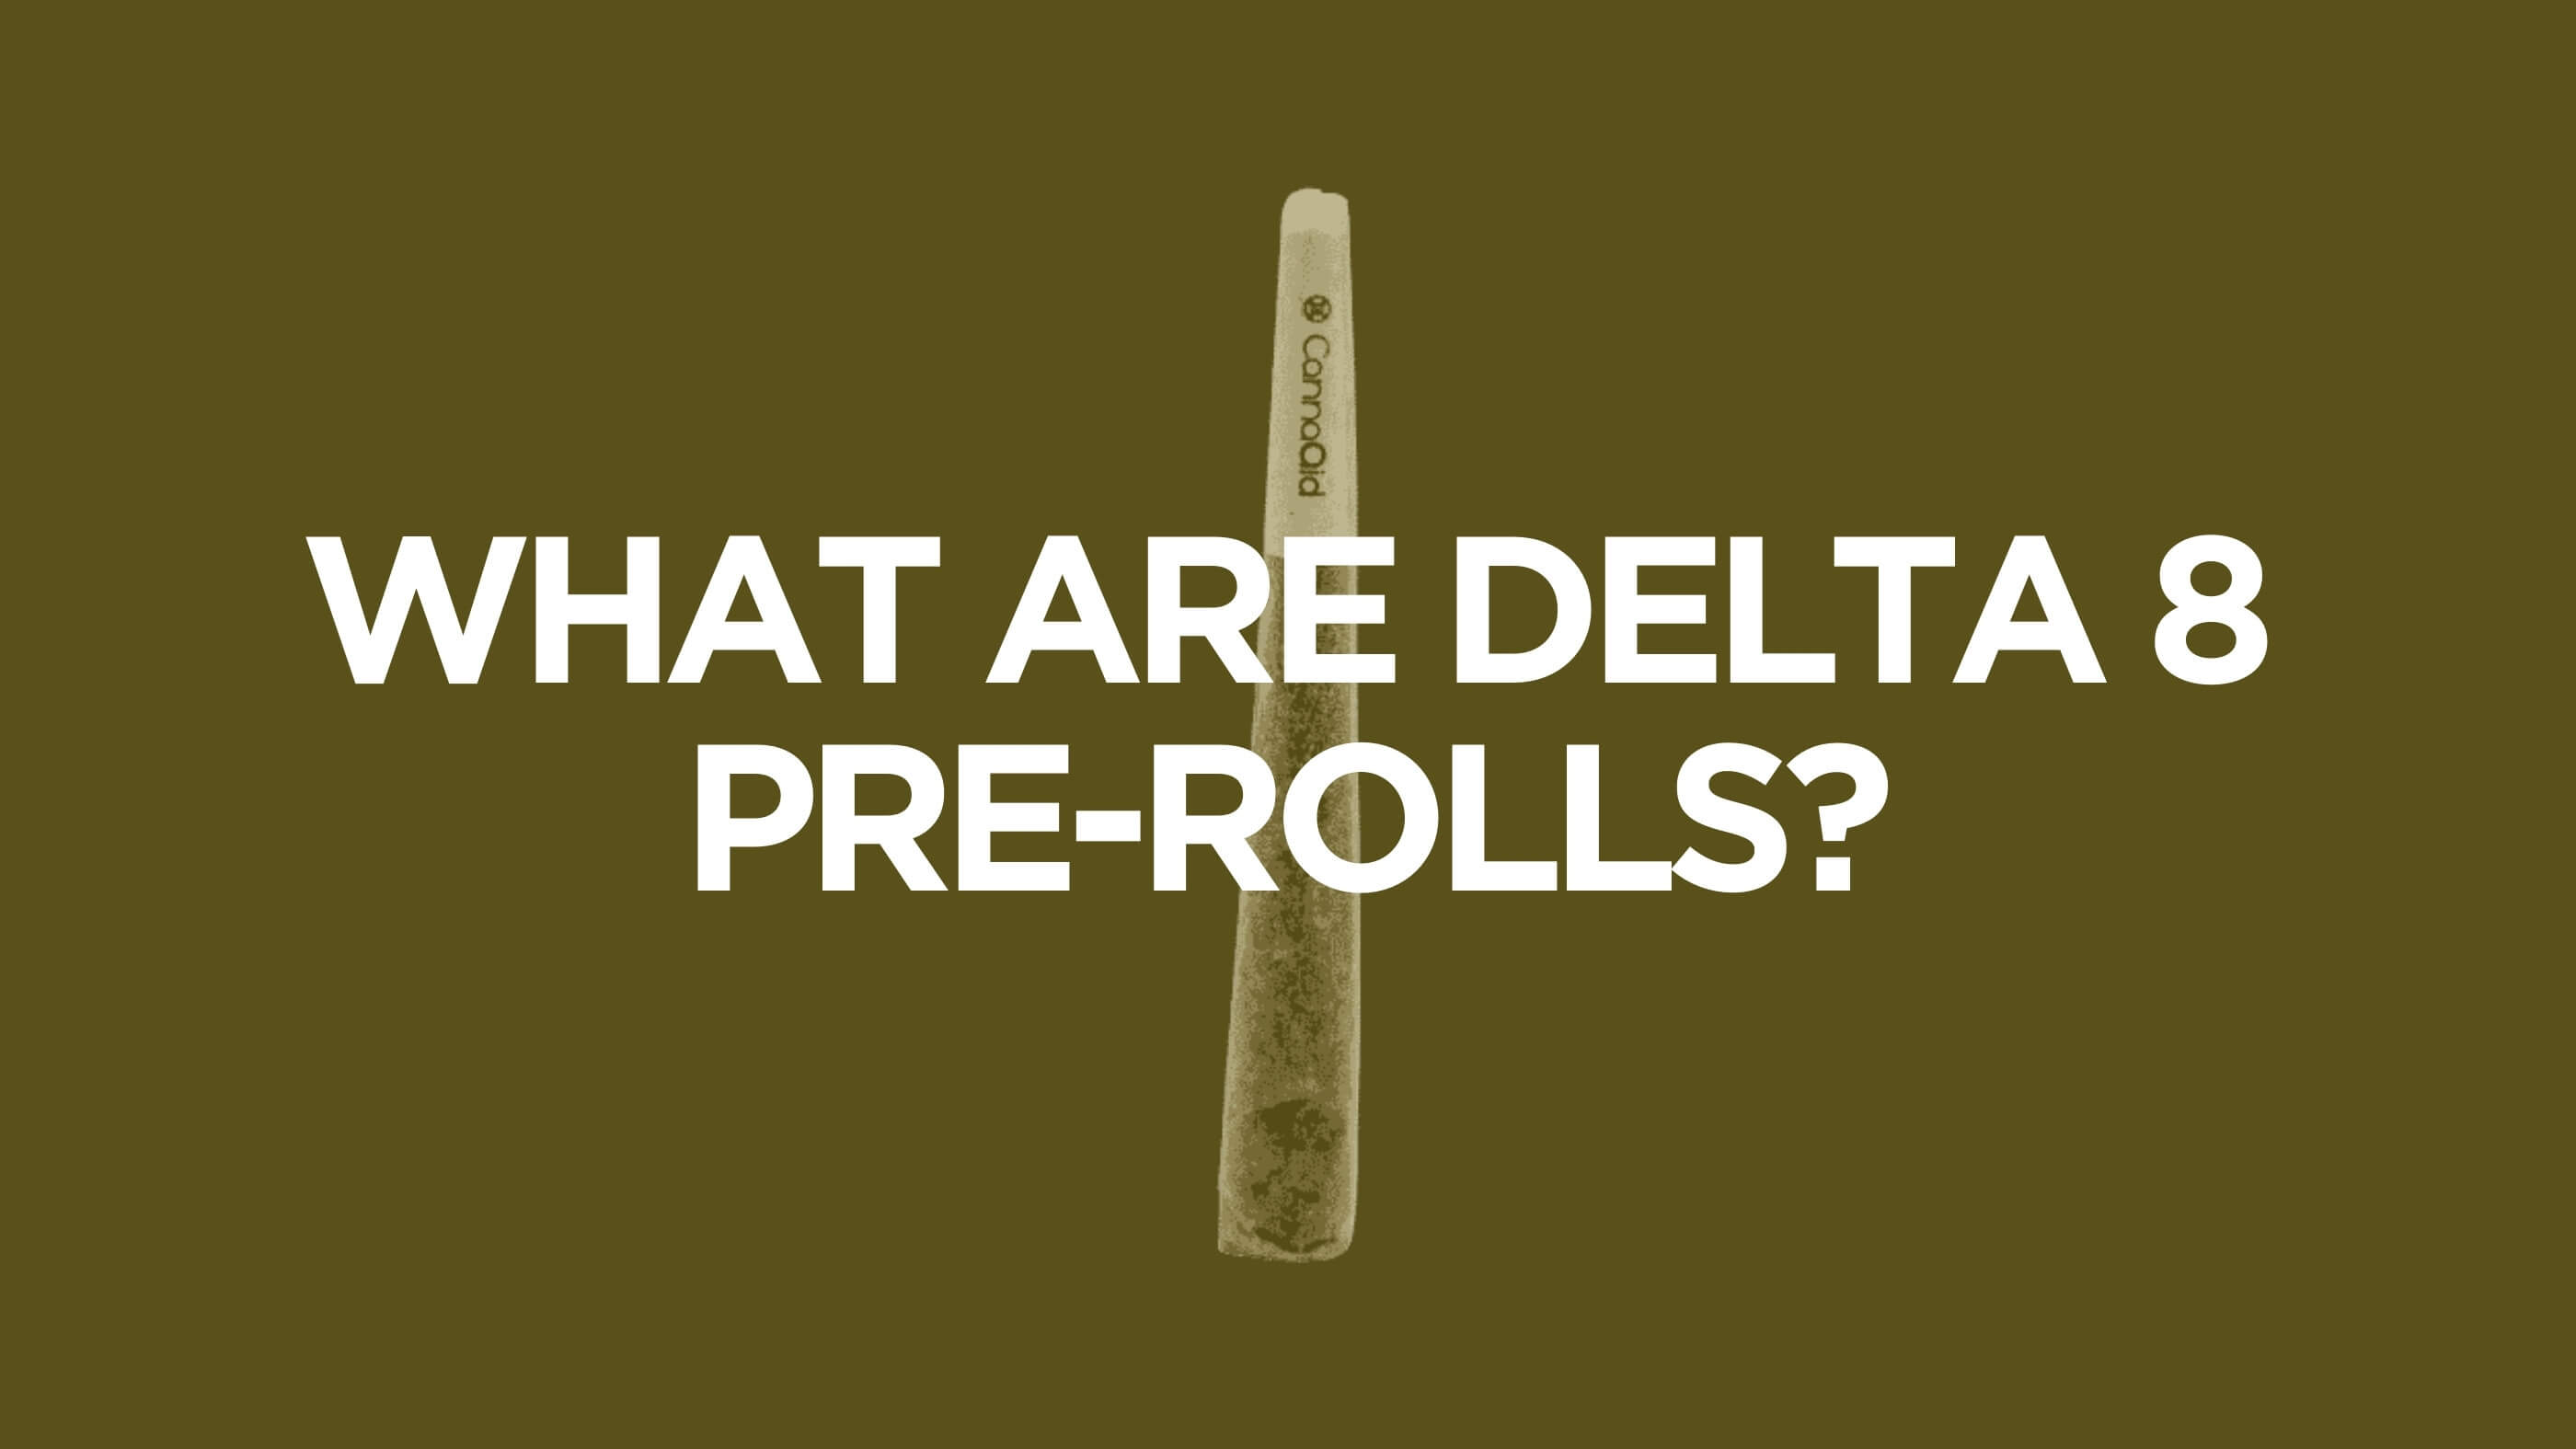 delta 8 pre-rolls